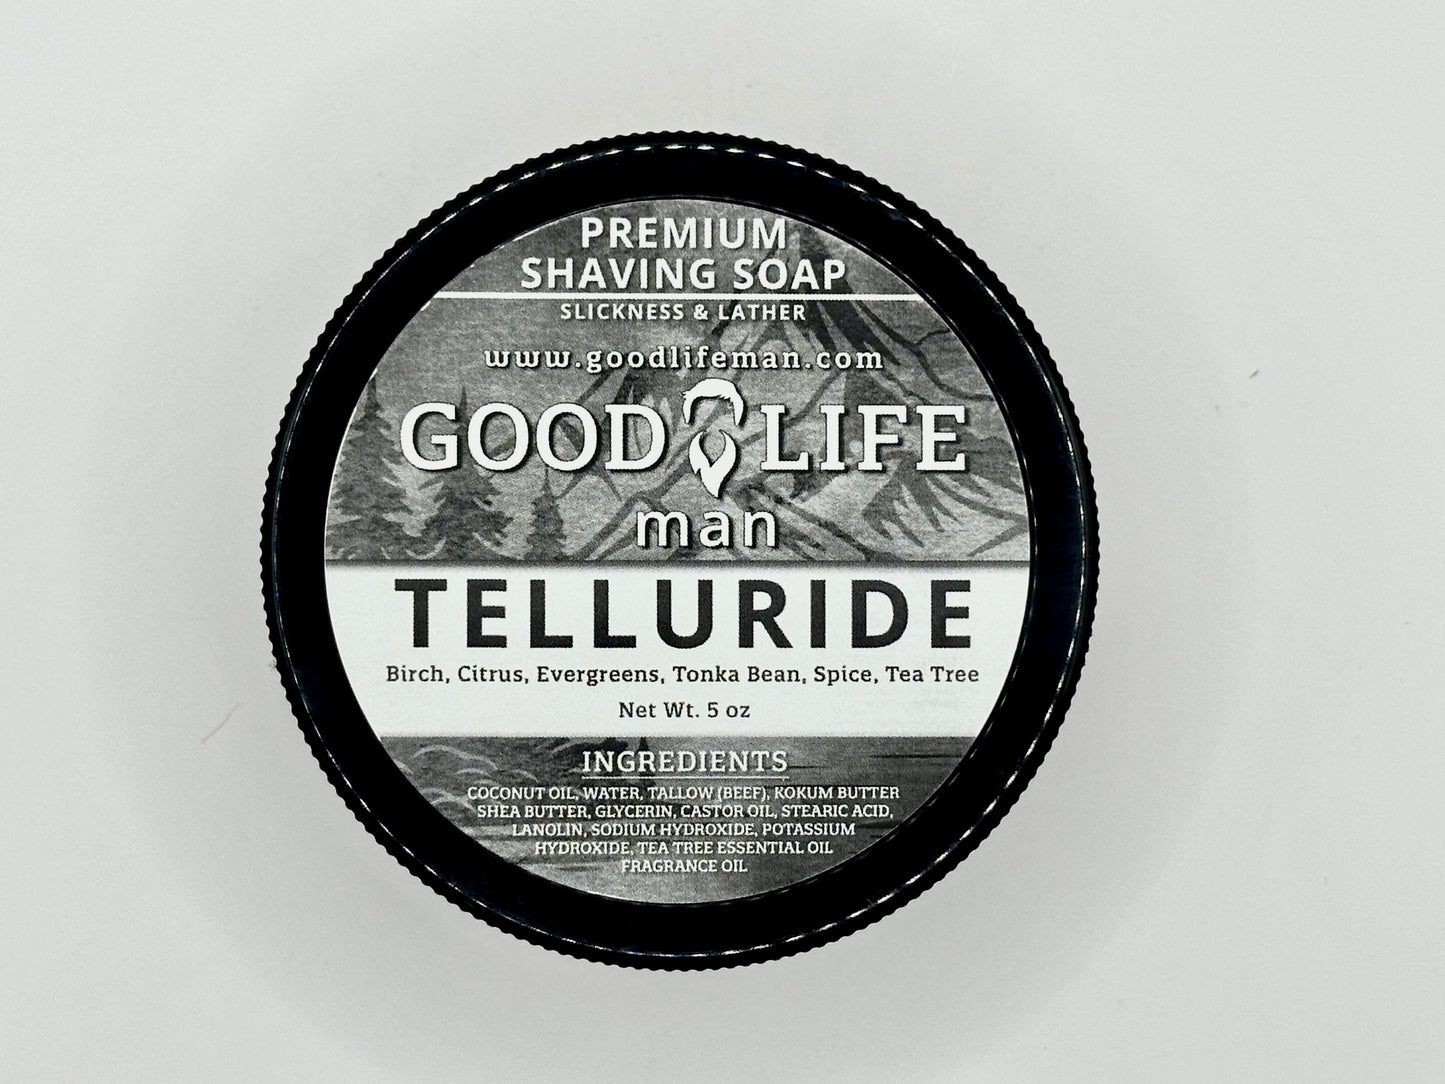 Telluride Premium Shaving Soap